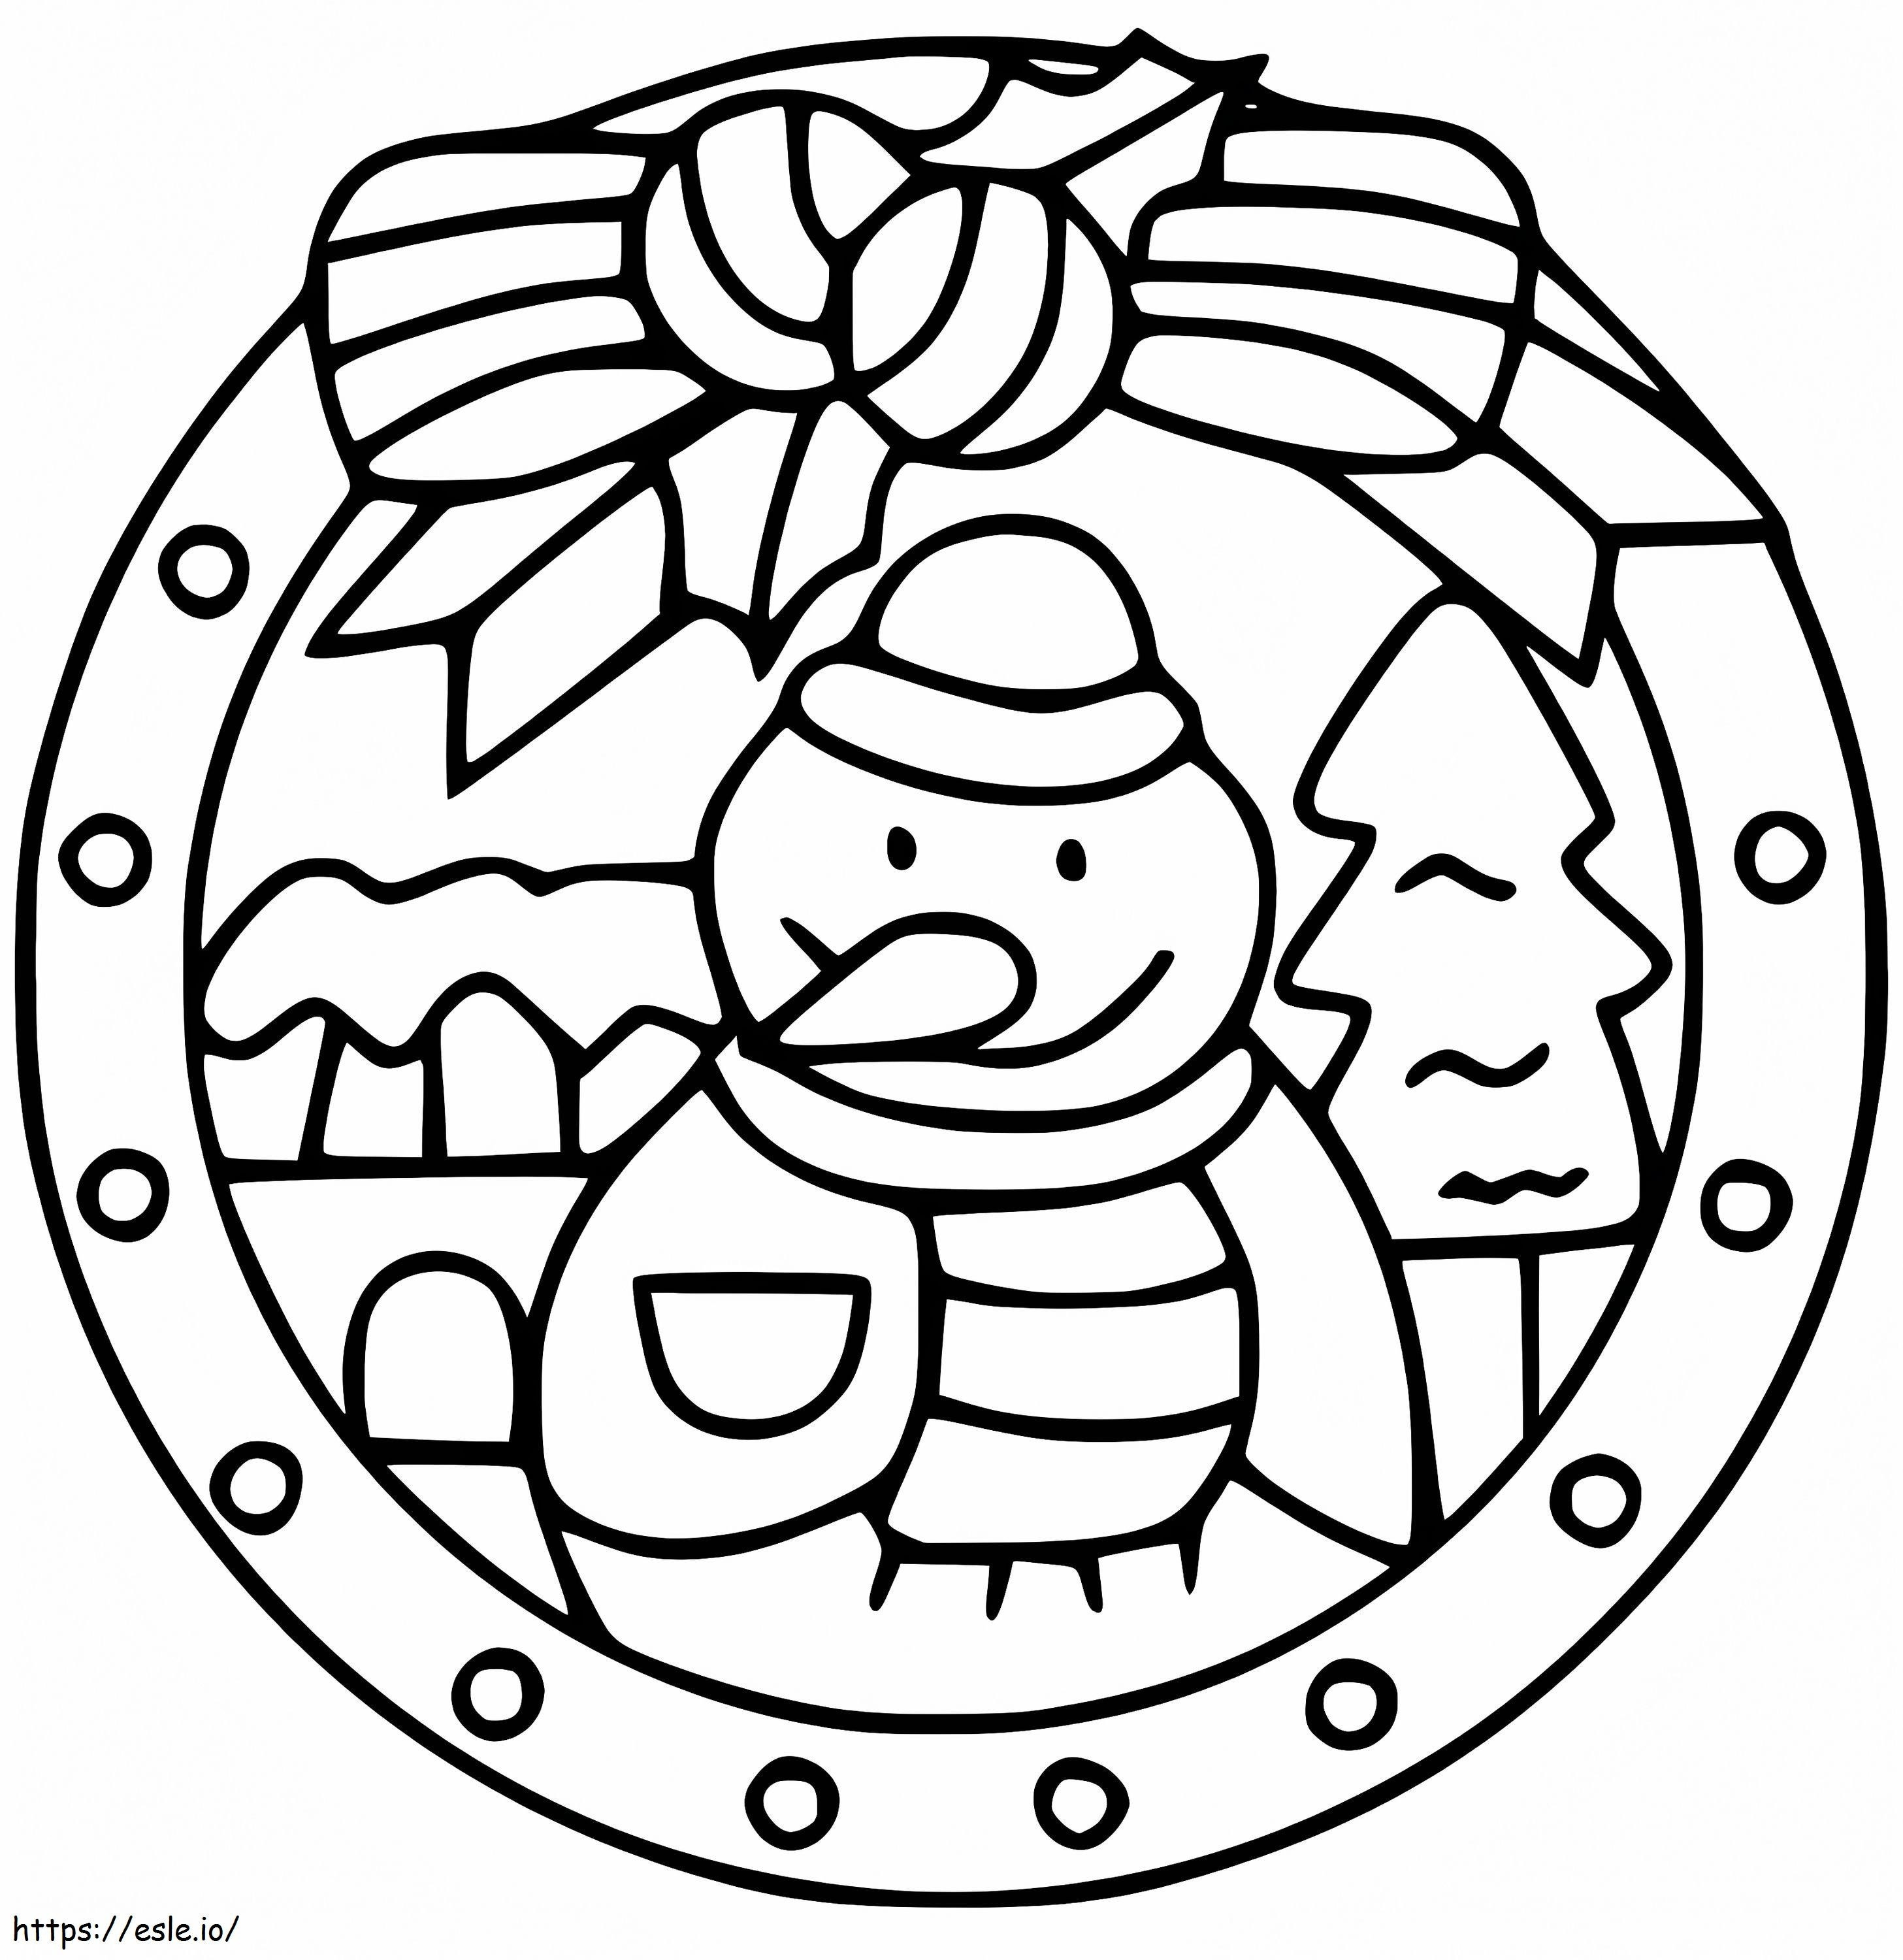 Coloriage Mandala de Noël 10 à imprimer dessin